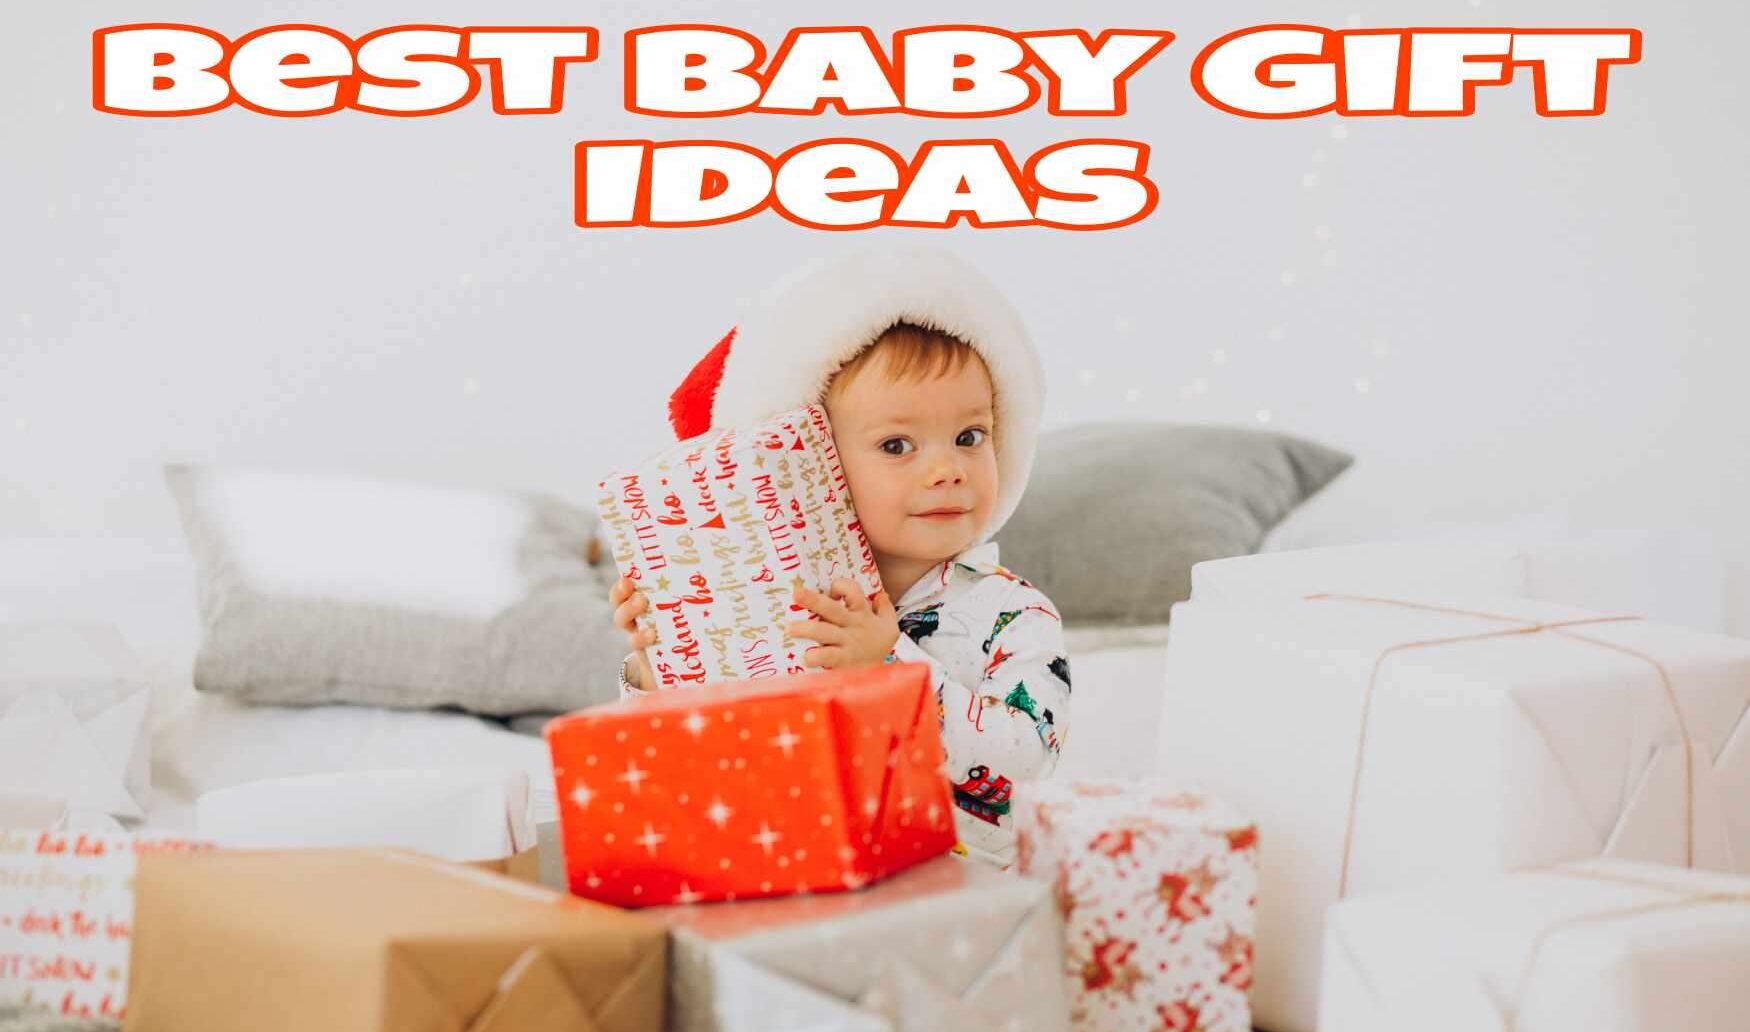 50 Best Baby Gift Ideas